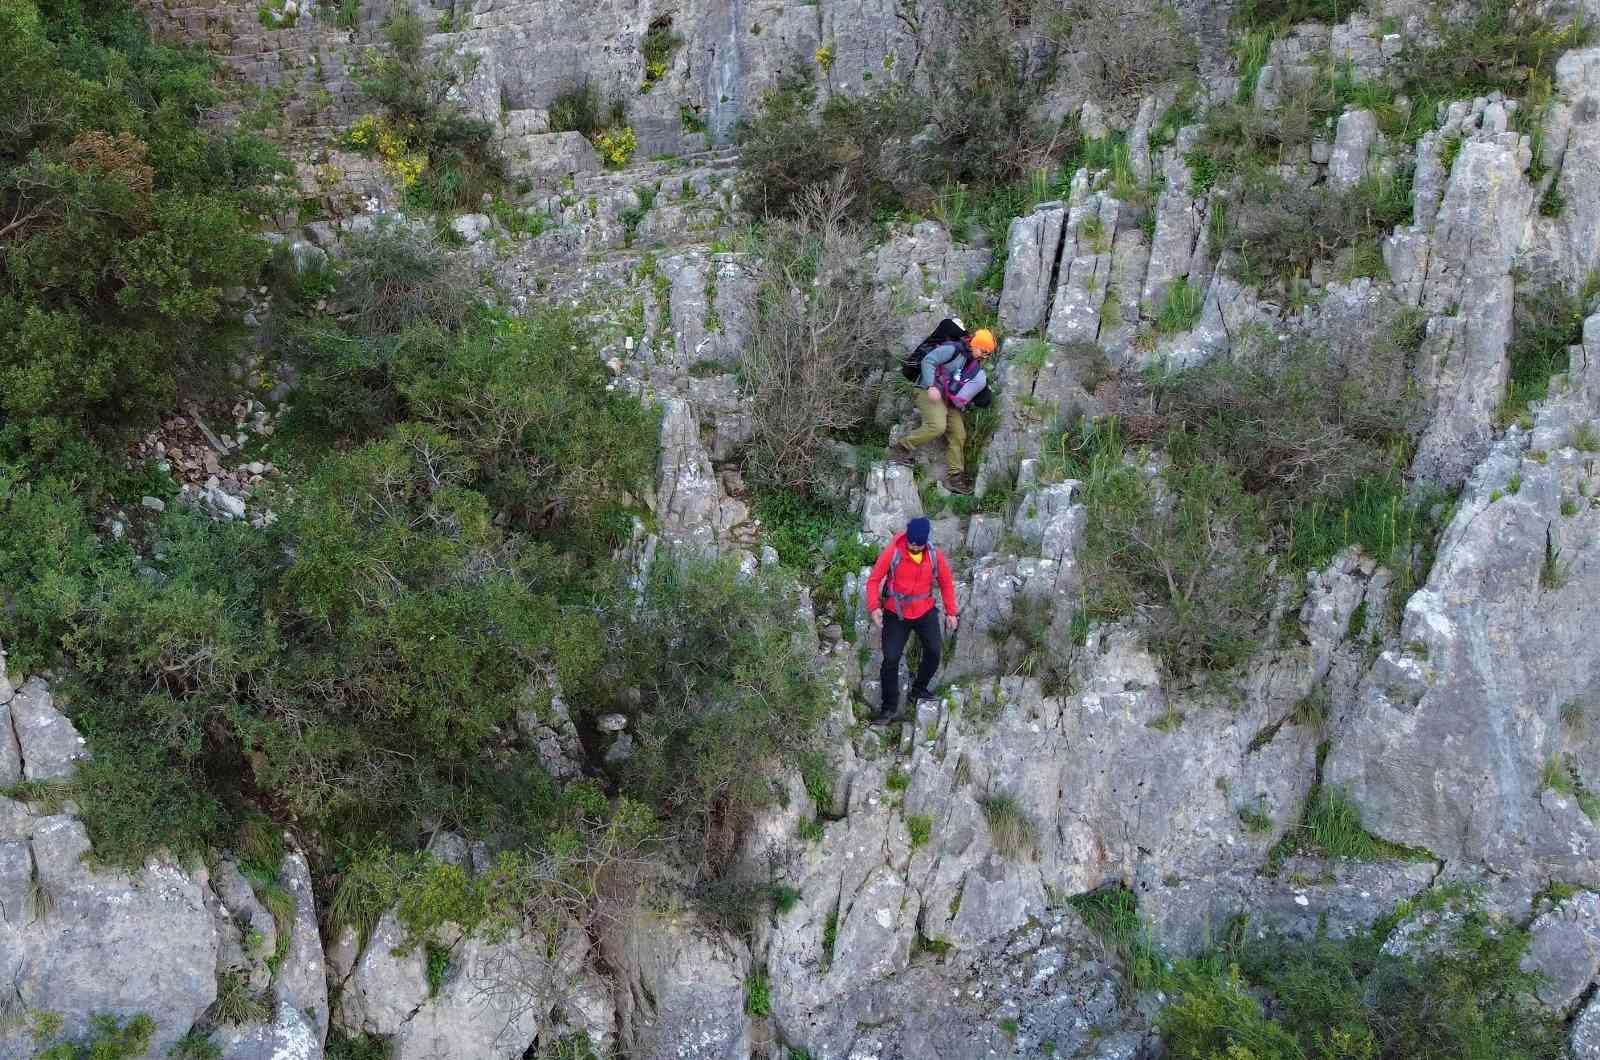 Kocaeli’nin Gebze ilçesinde bulunan ve doğal güzelliğiyle mest eden Ballıkayalar Tabiat Parkı, kaya tırmanışı yapmak isteyen adrenalin ...